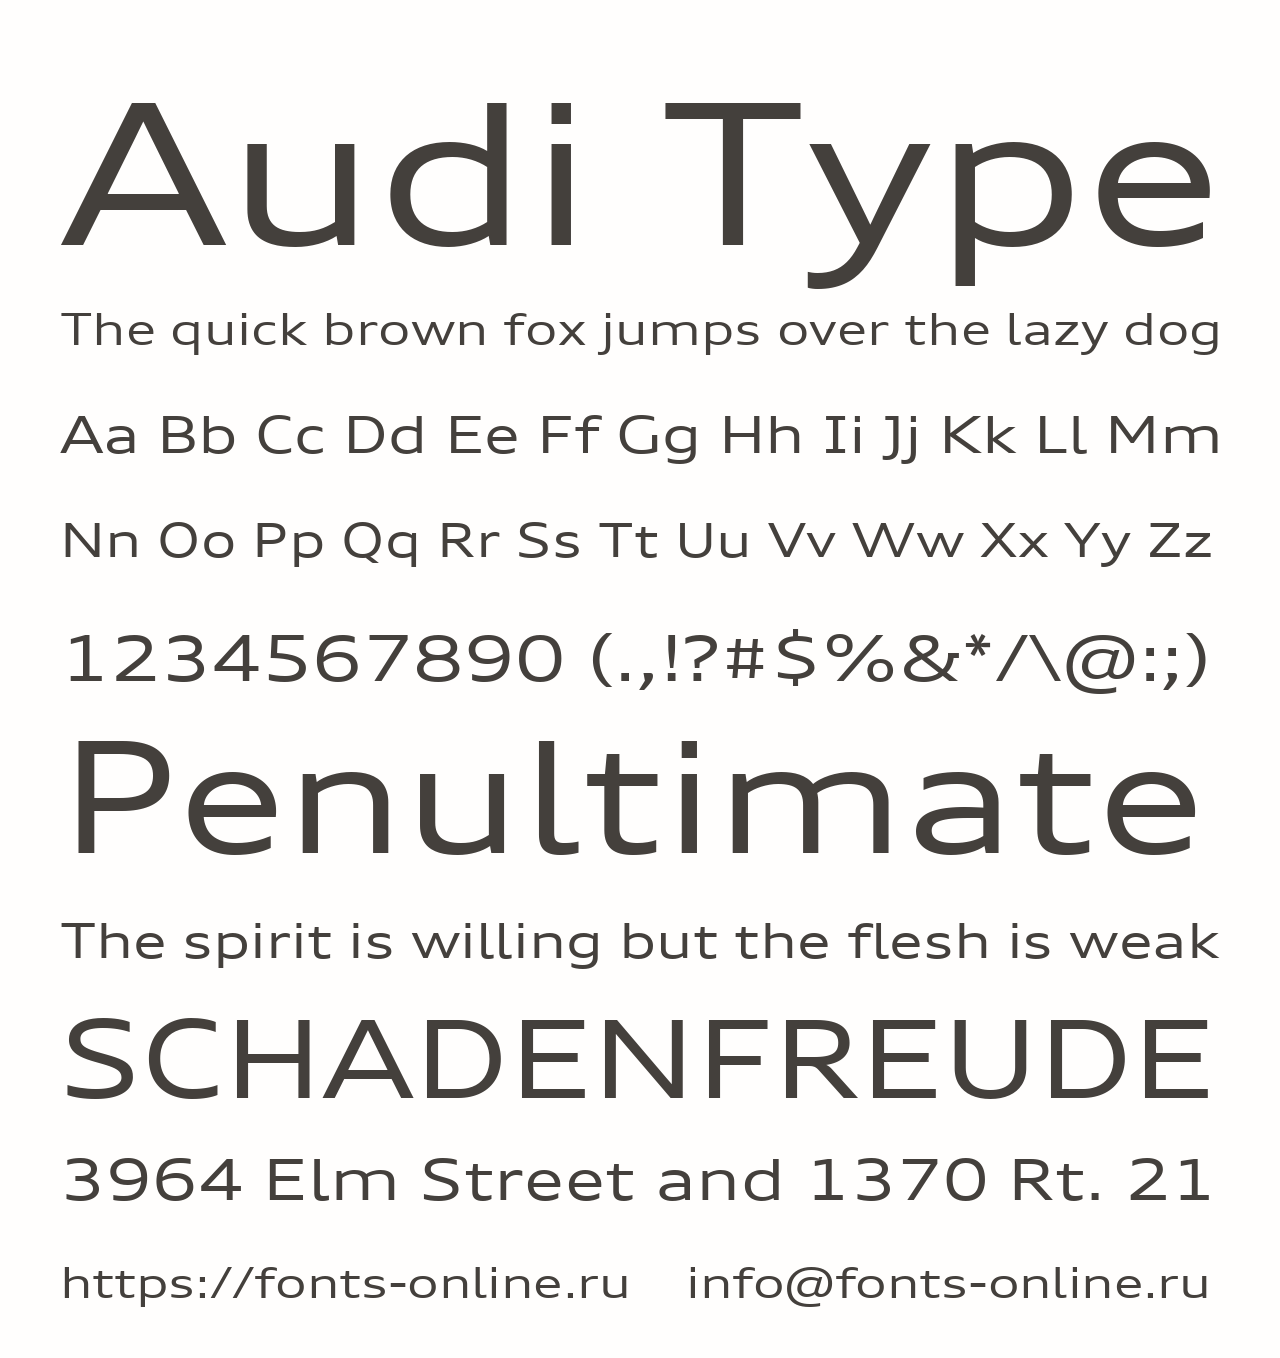 Beispiel einer Audi Type-Schriftart